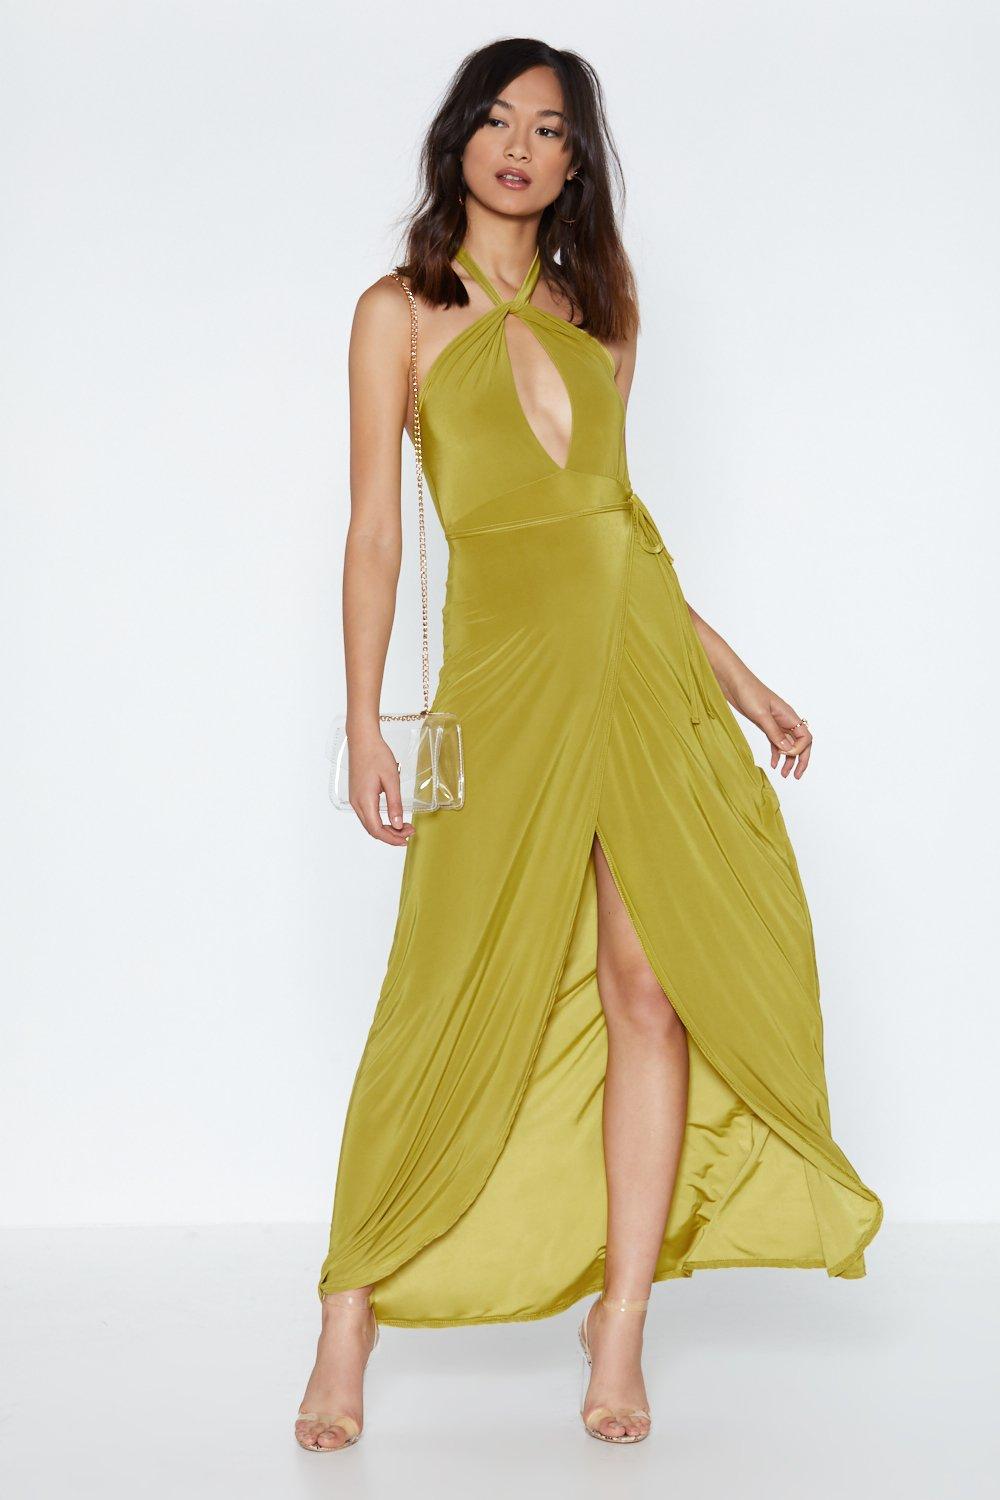 chartreuse maxi dress